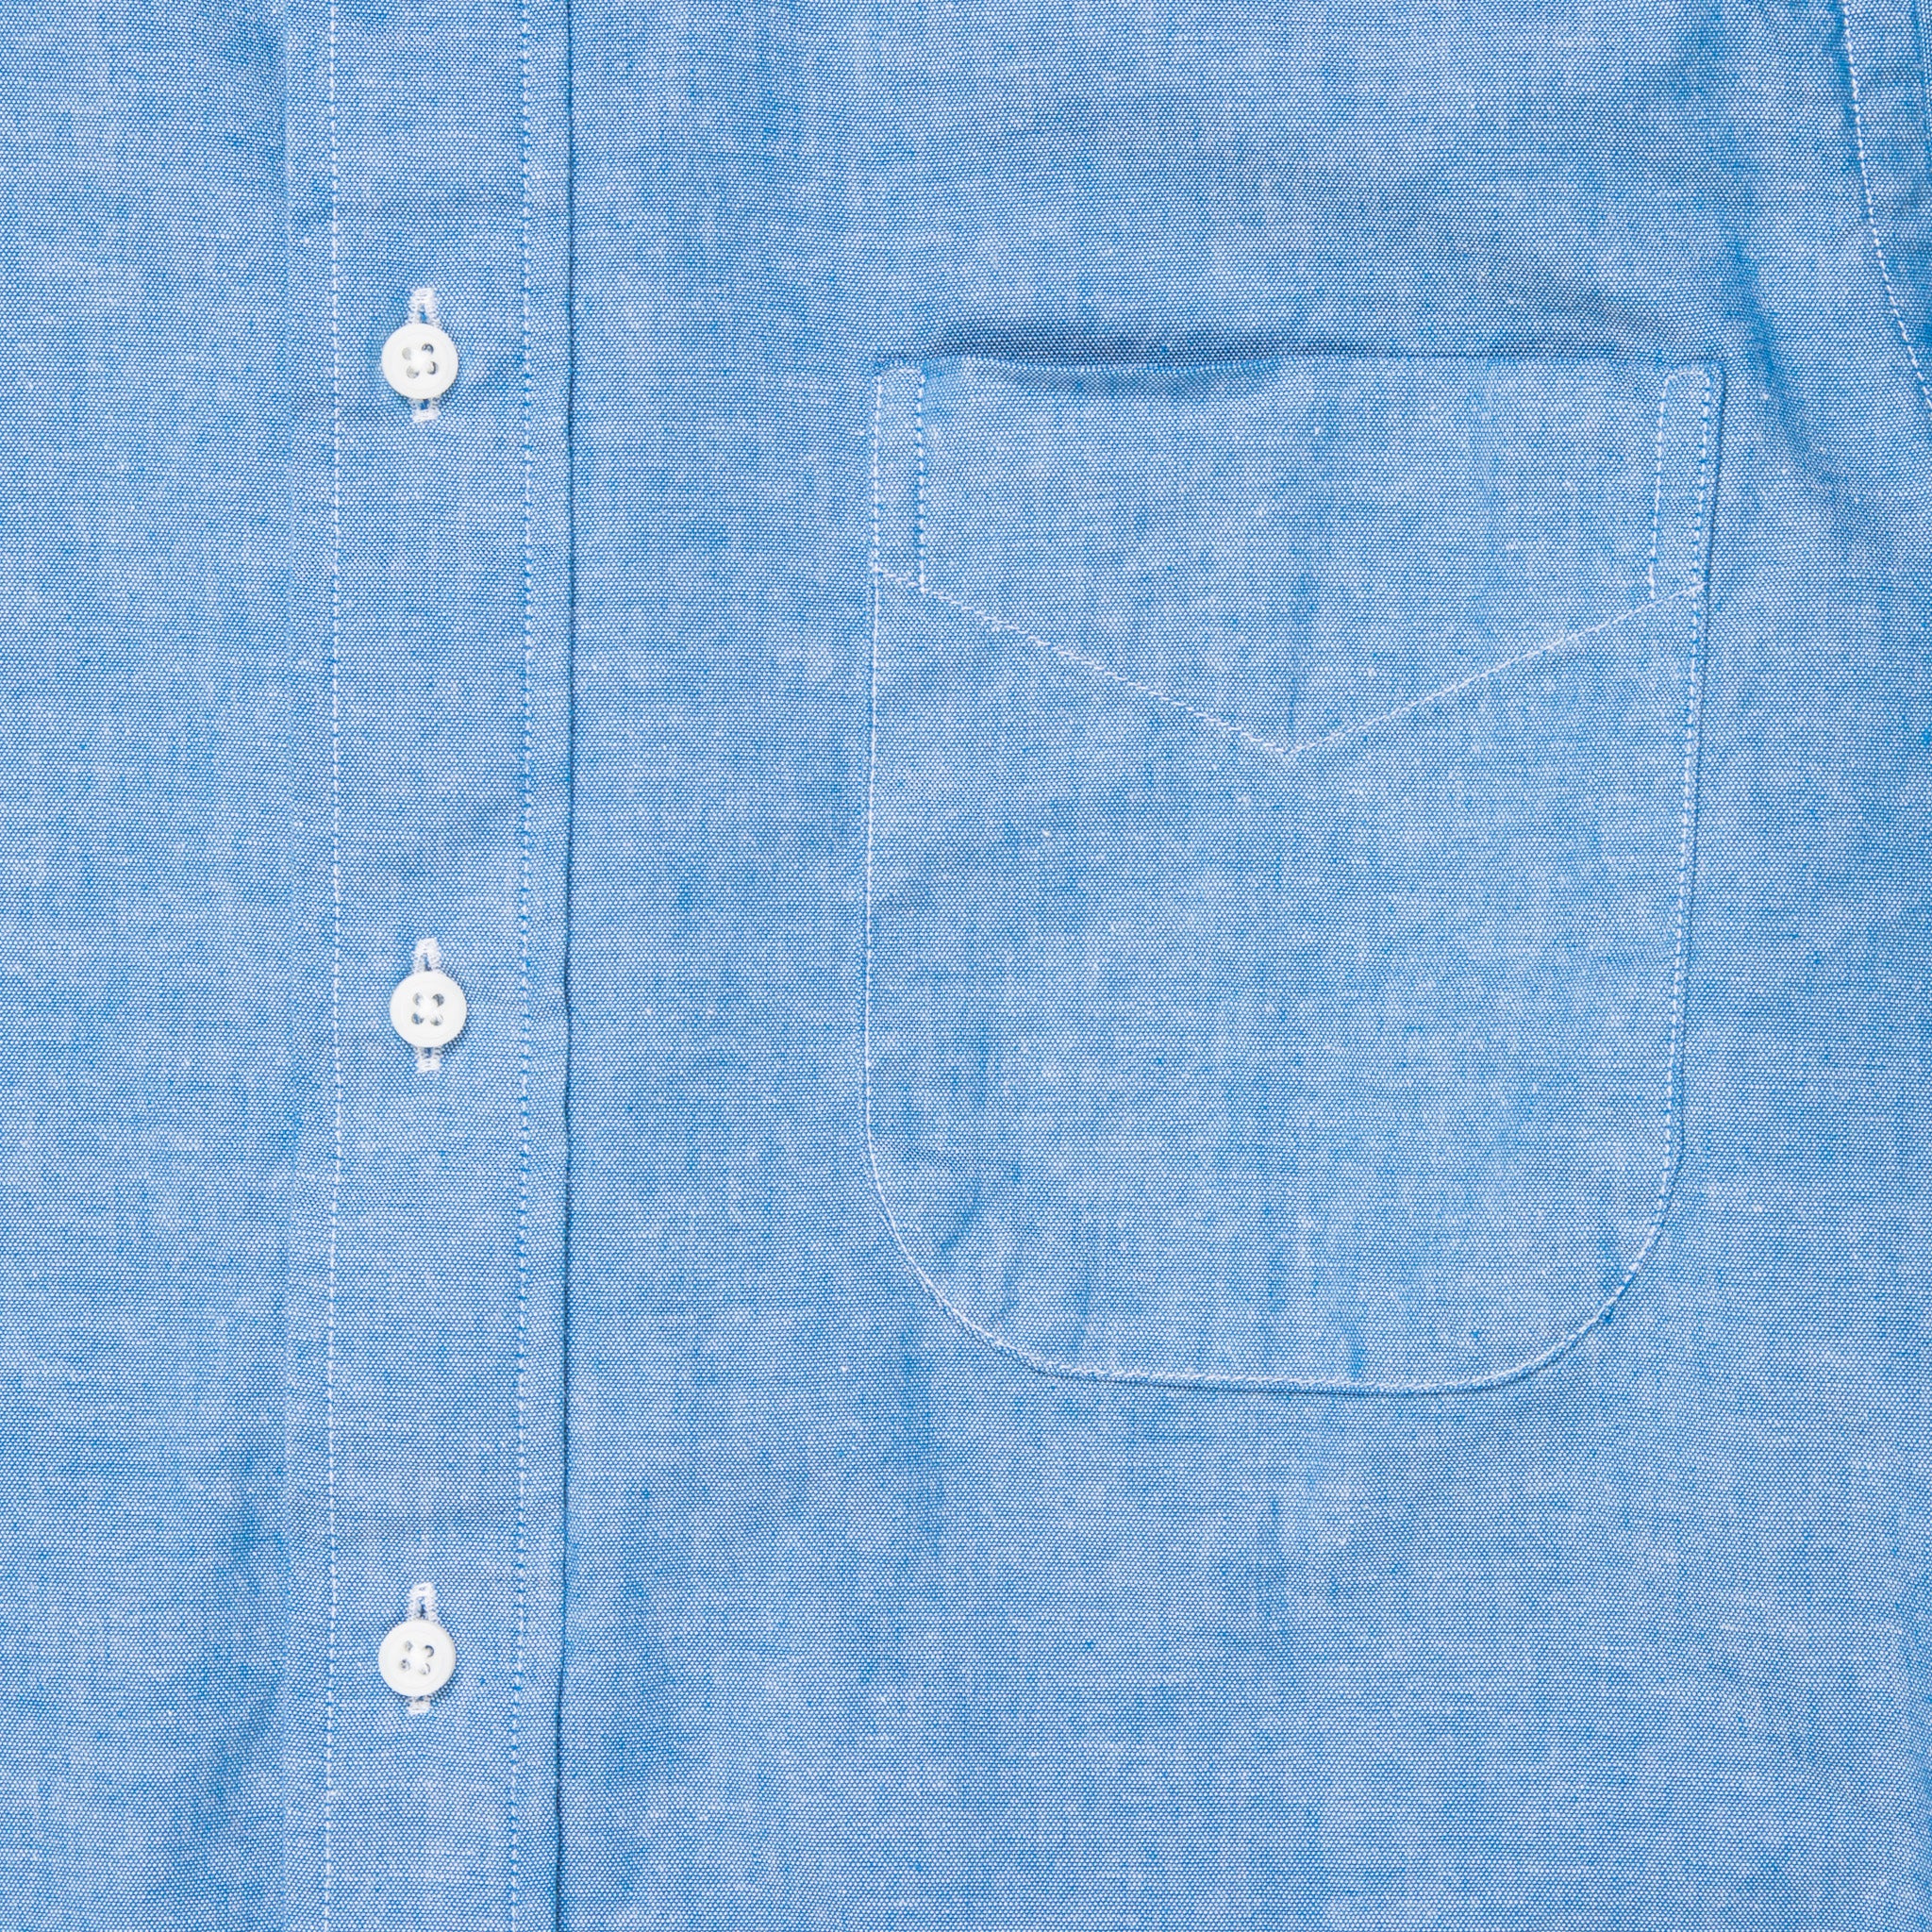 Gitman Vintage Button-Down Shirt Blue Chambray